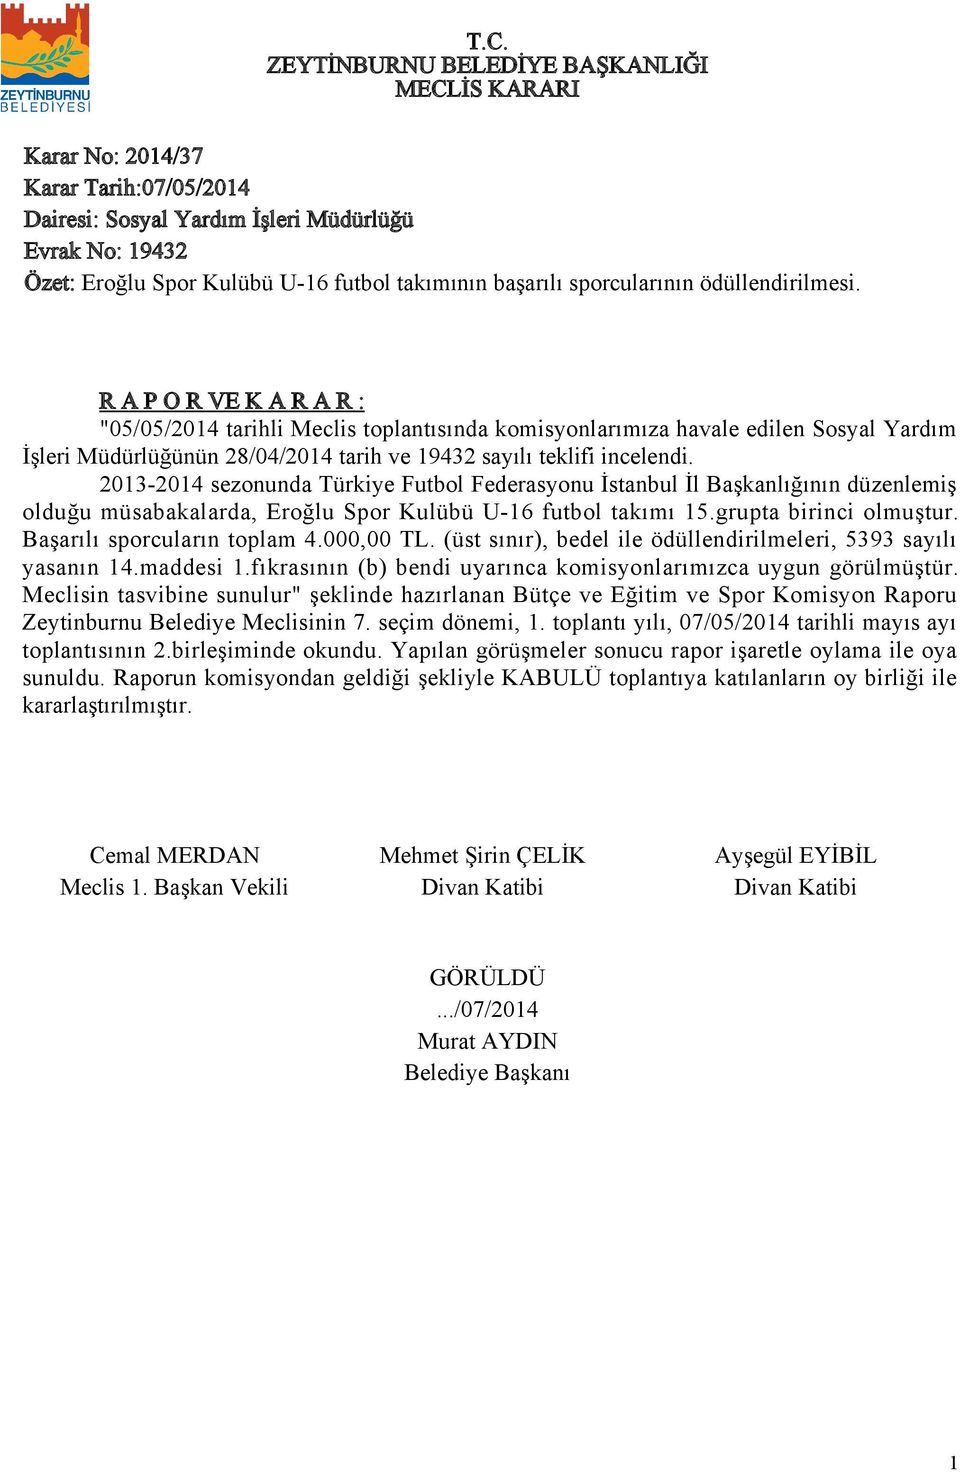 203-204 sezonunda Türkiye Futbol Federasyonu İstanbul İl Başkanlığının düzenlemiş olduğu müsabakalarda, Eroğlu Spor Kulübü U-6 futbol takımı 5.grupta birinci olmuştur. Başarılı sporcuların toplam 4.